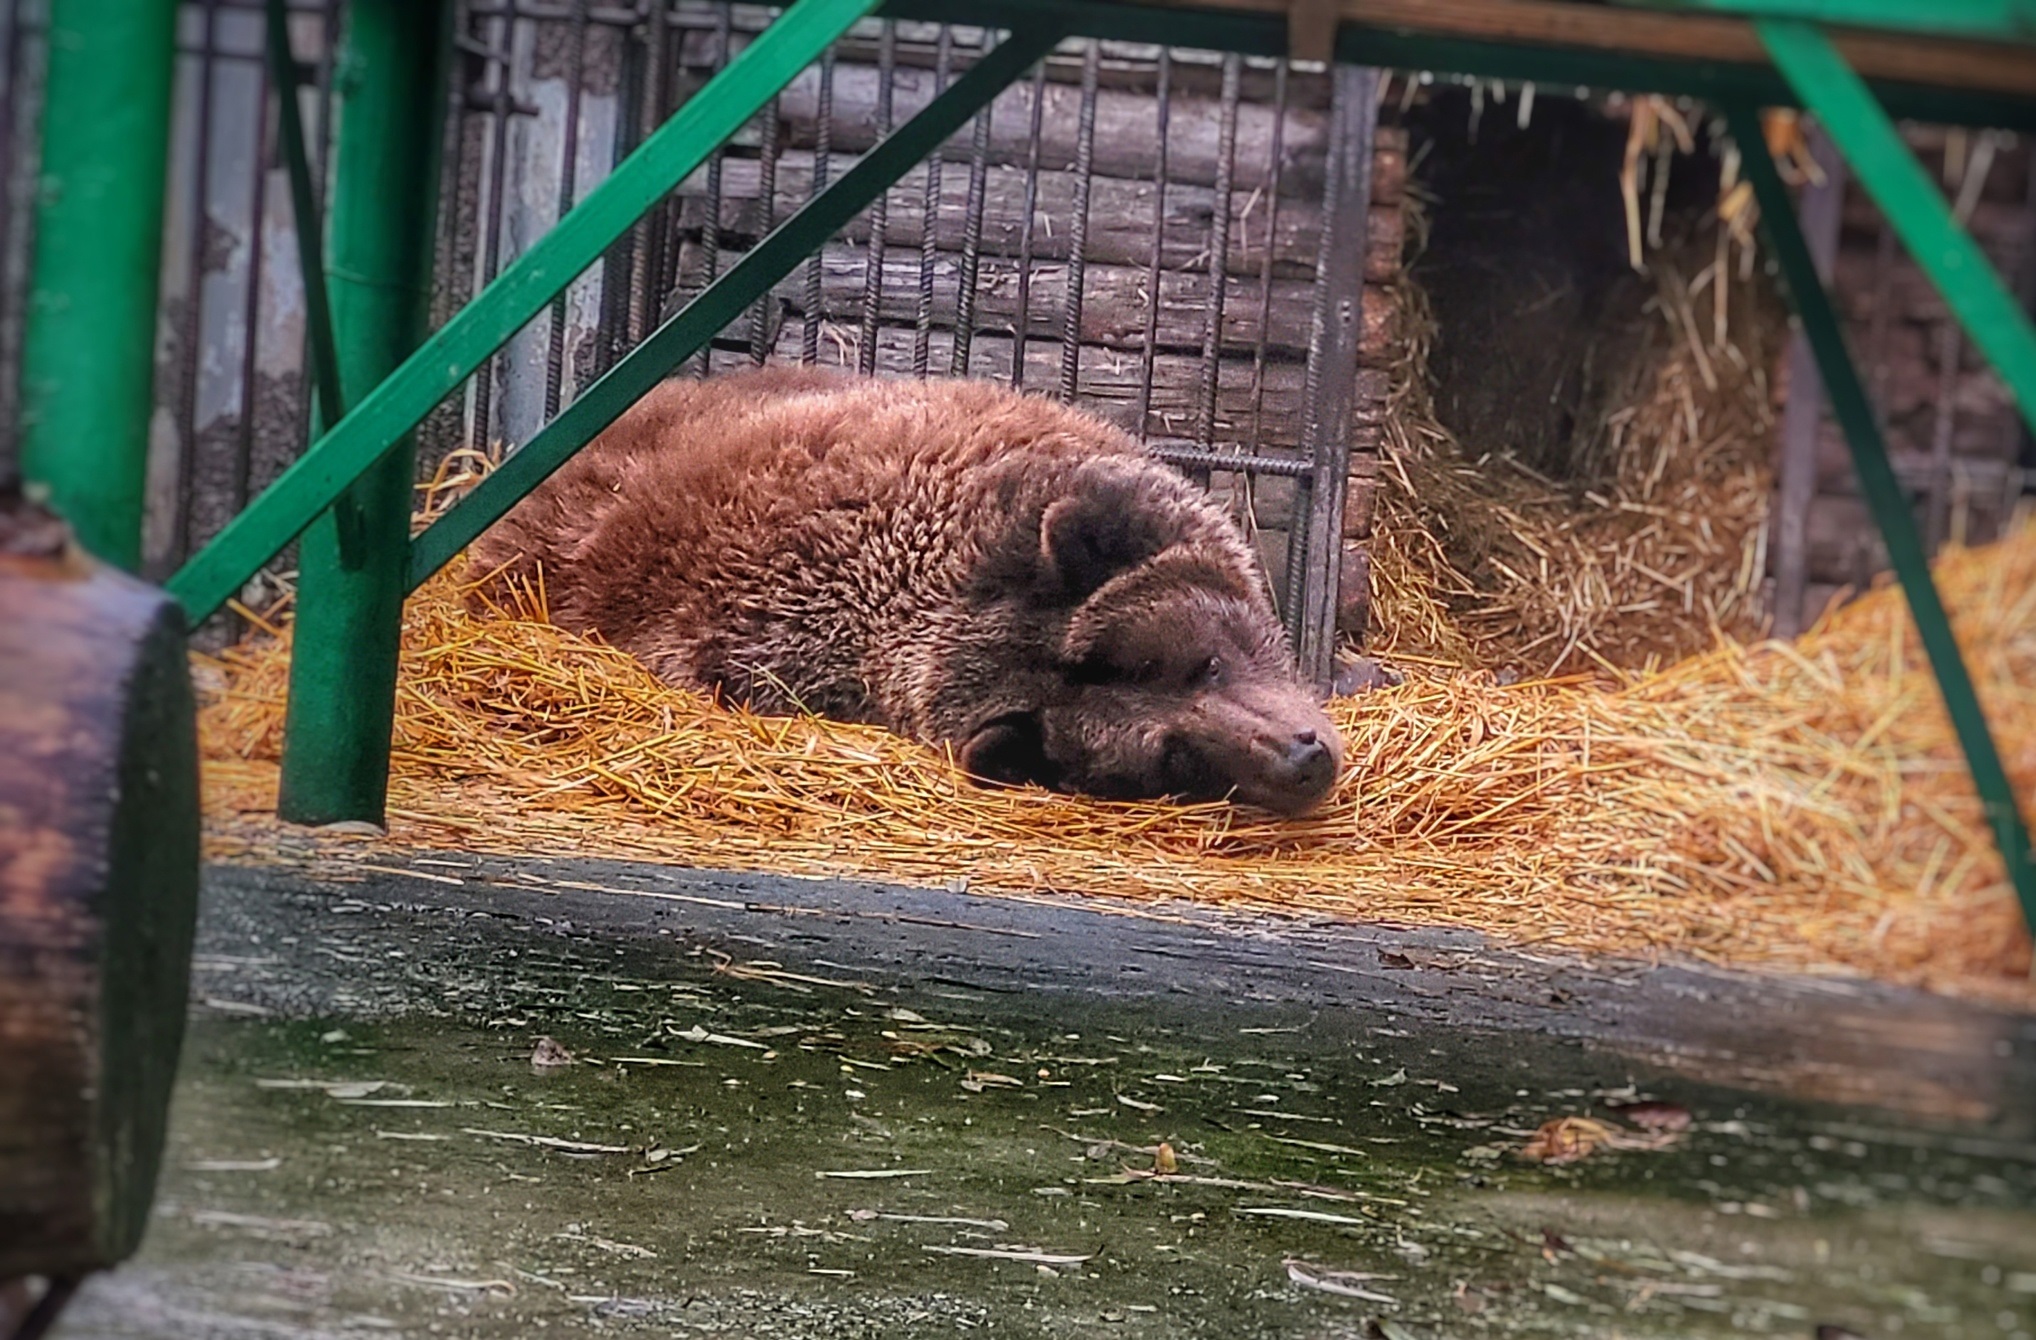 Бурая медведица из Большереченского зоопарка неожиданно вышла из спячки #Омск #Общество #Сегодня